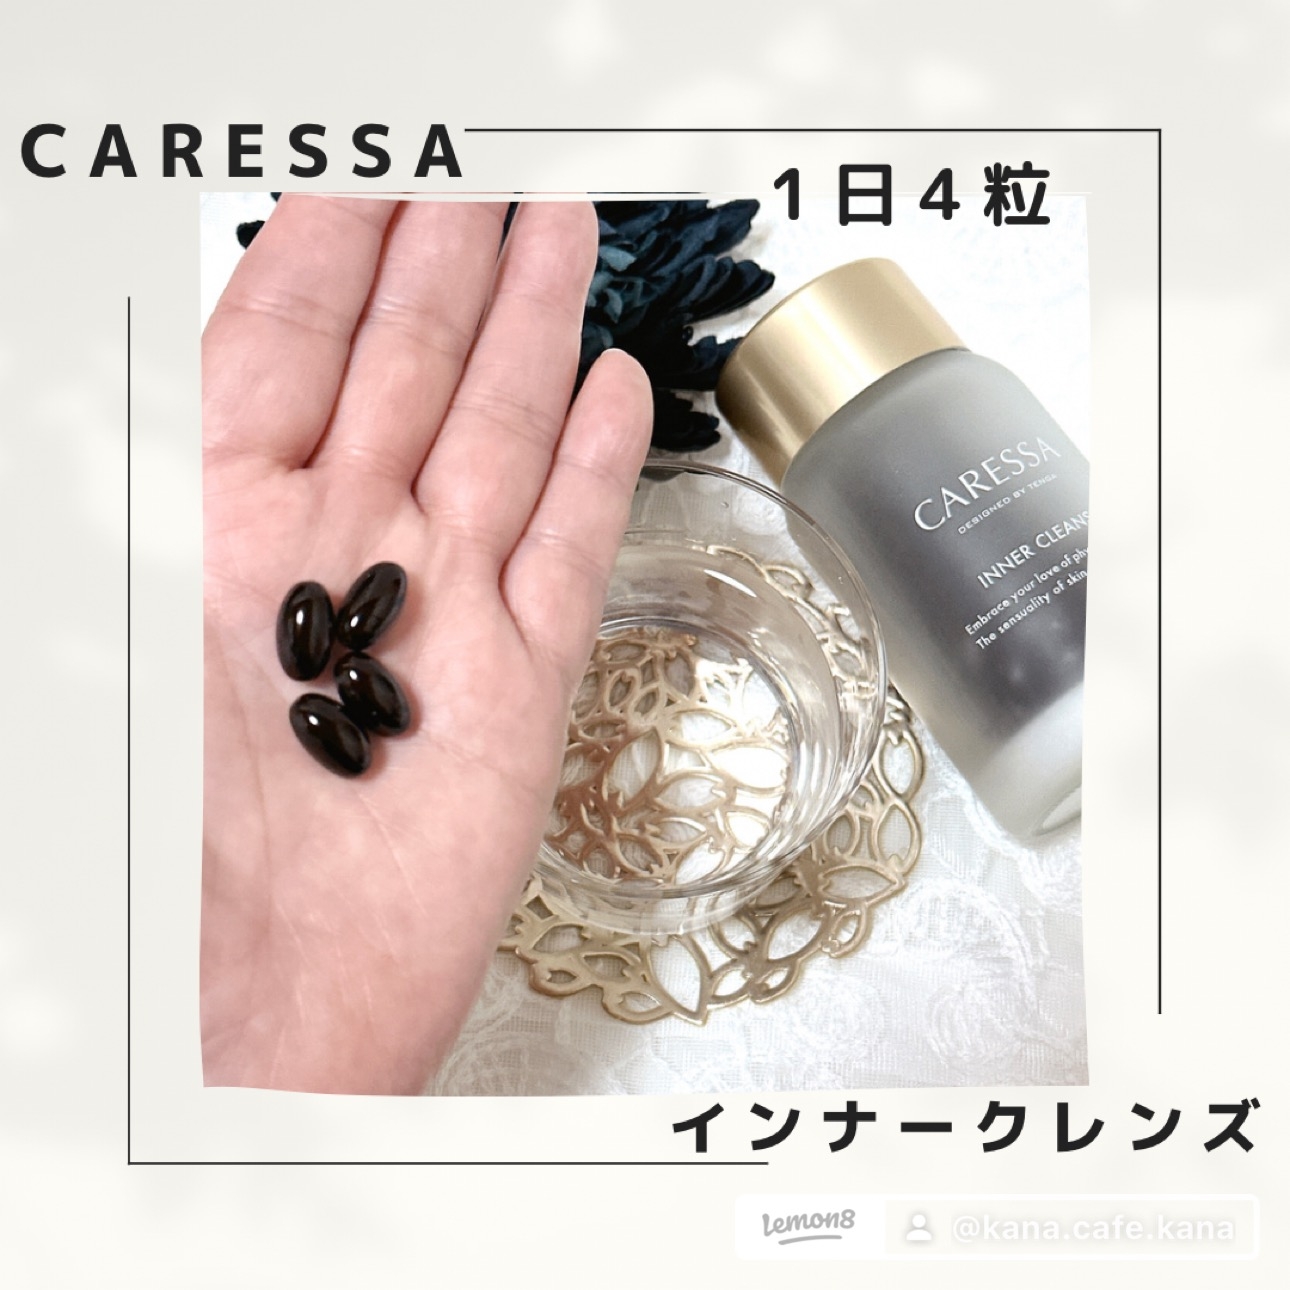 CARESSA(カレッサ) インナークレンズの良い点・メリットに関するkana_cafe_timeさんの口コミ画像2